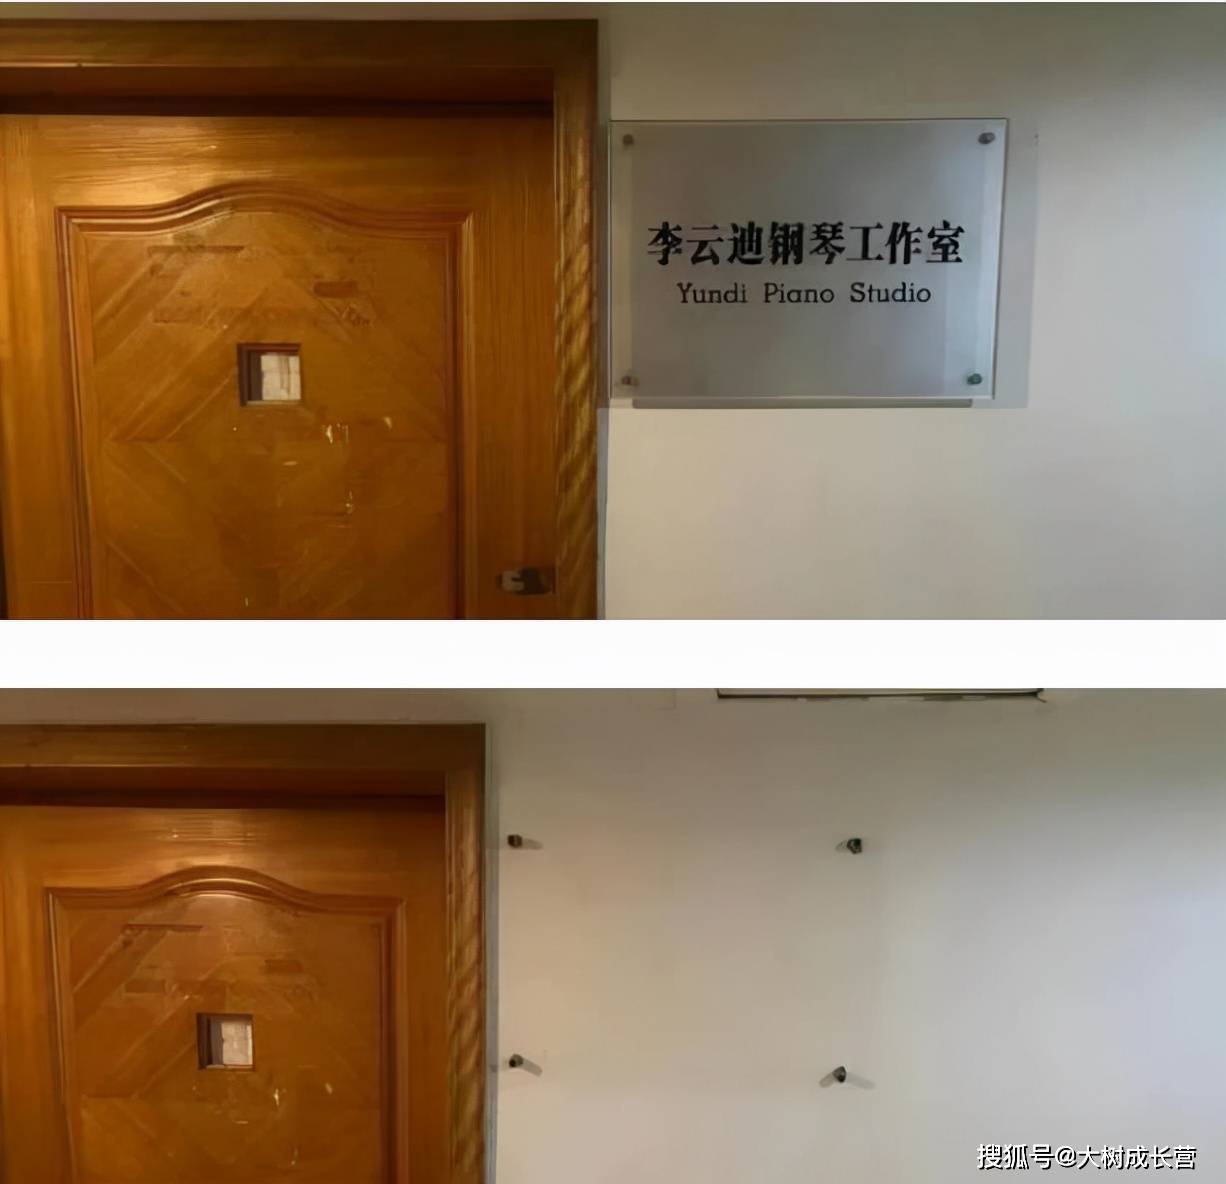 四川音乐学院并非李云betcmp冠军体育迪的母校，曾任5所高校教